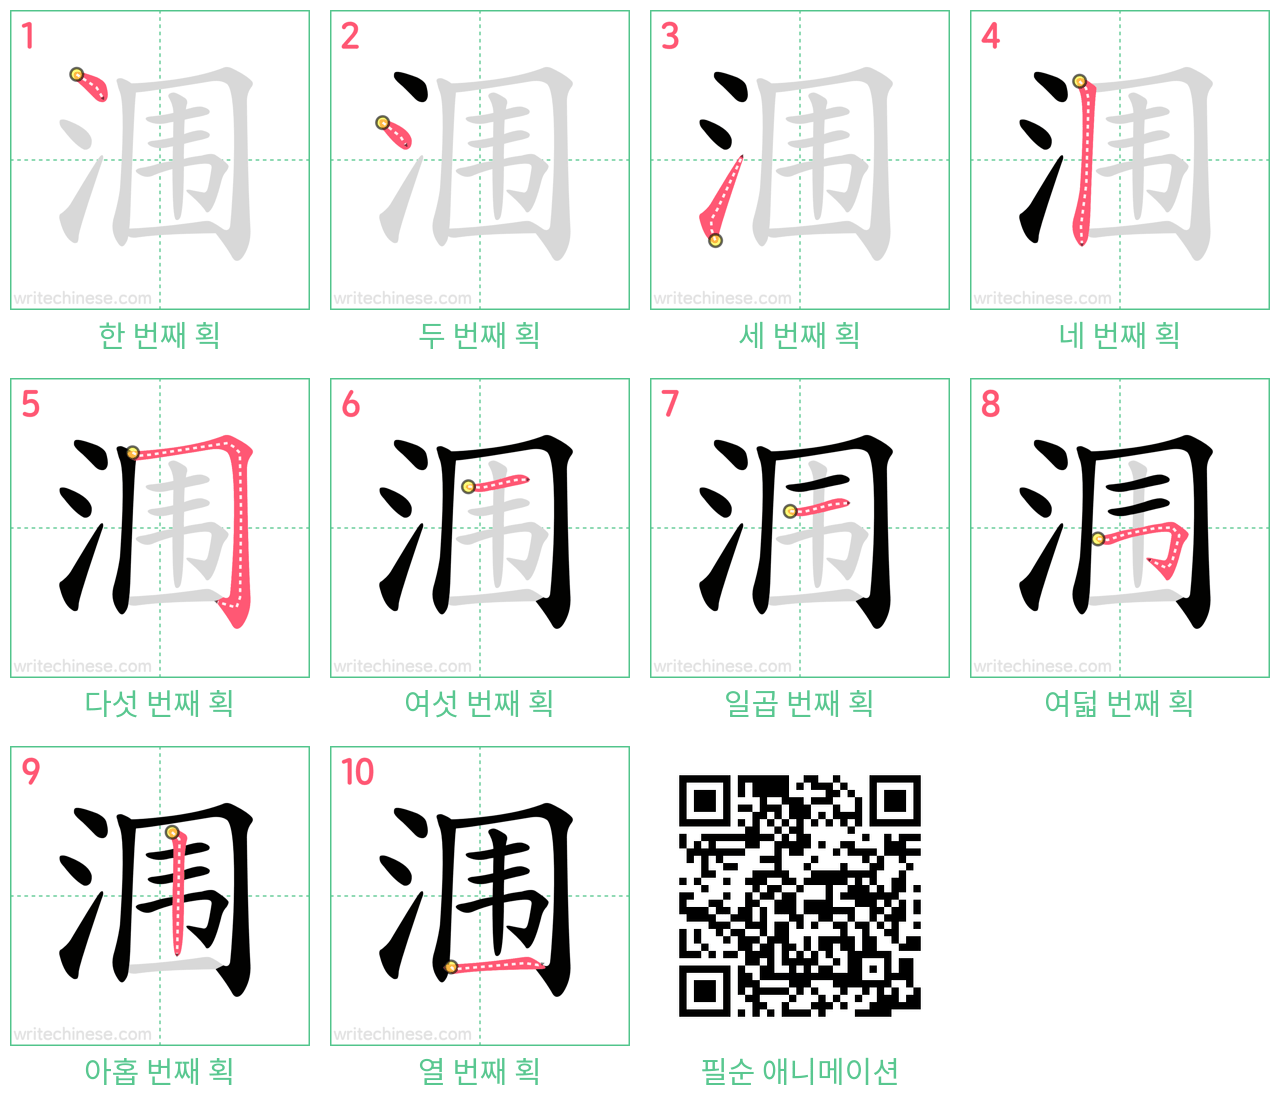 涠 step-by-step stroke order diagrams